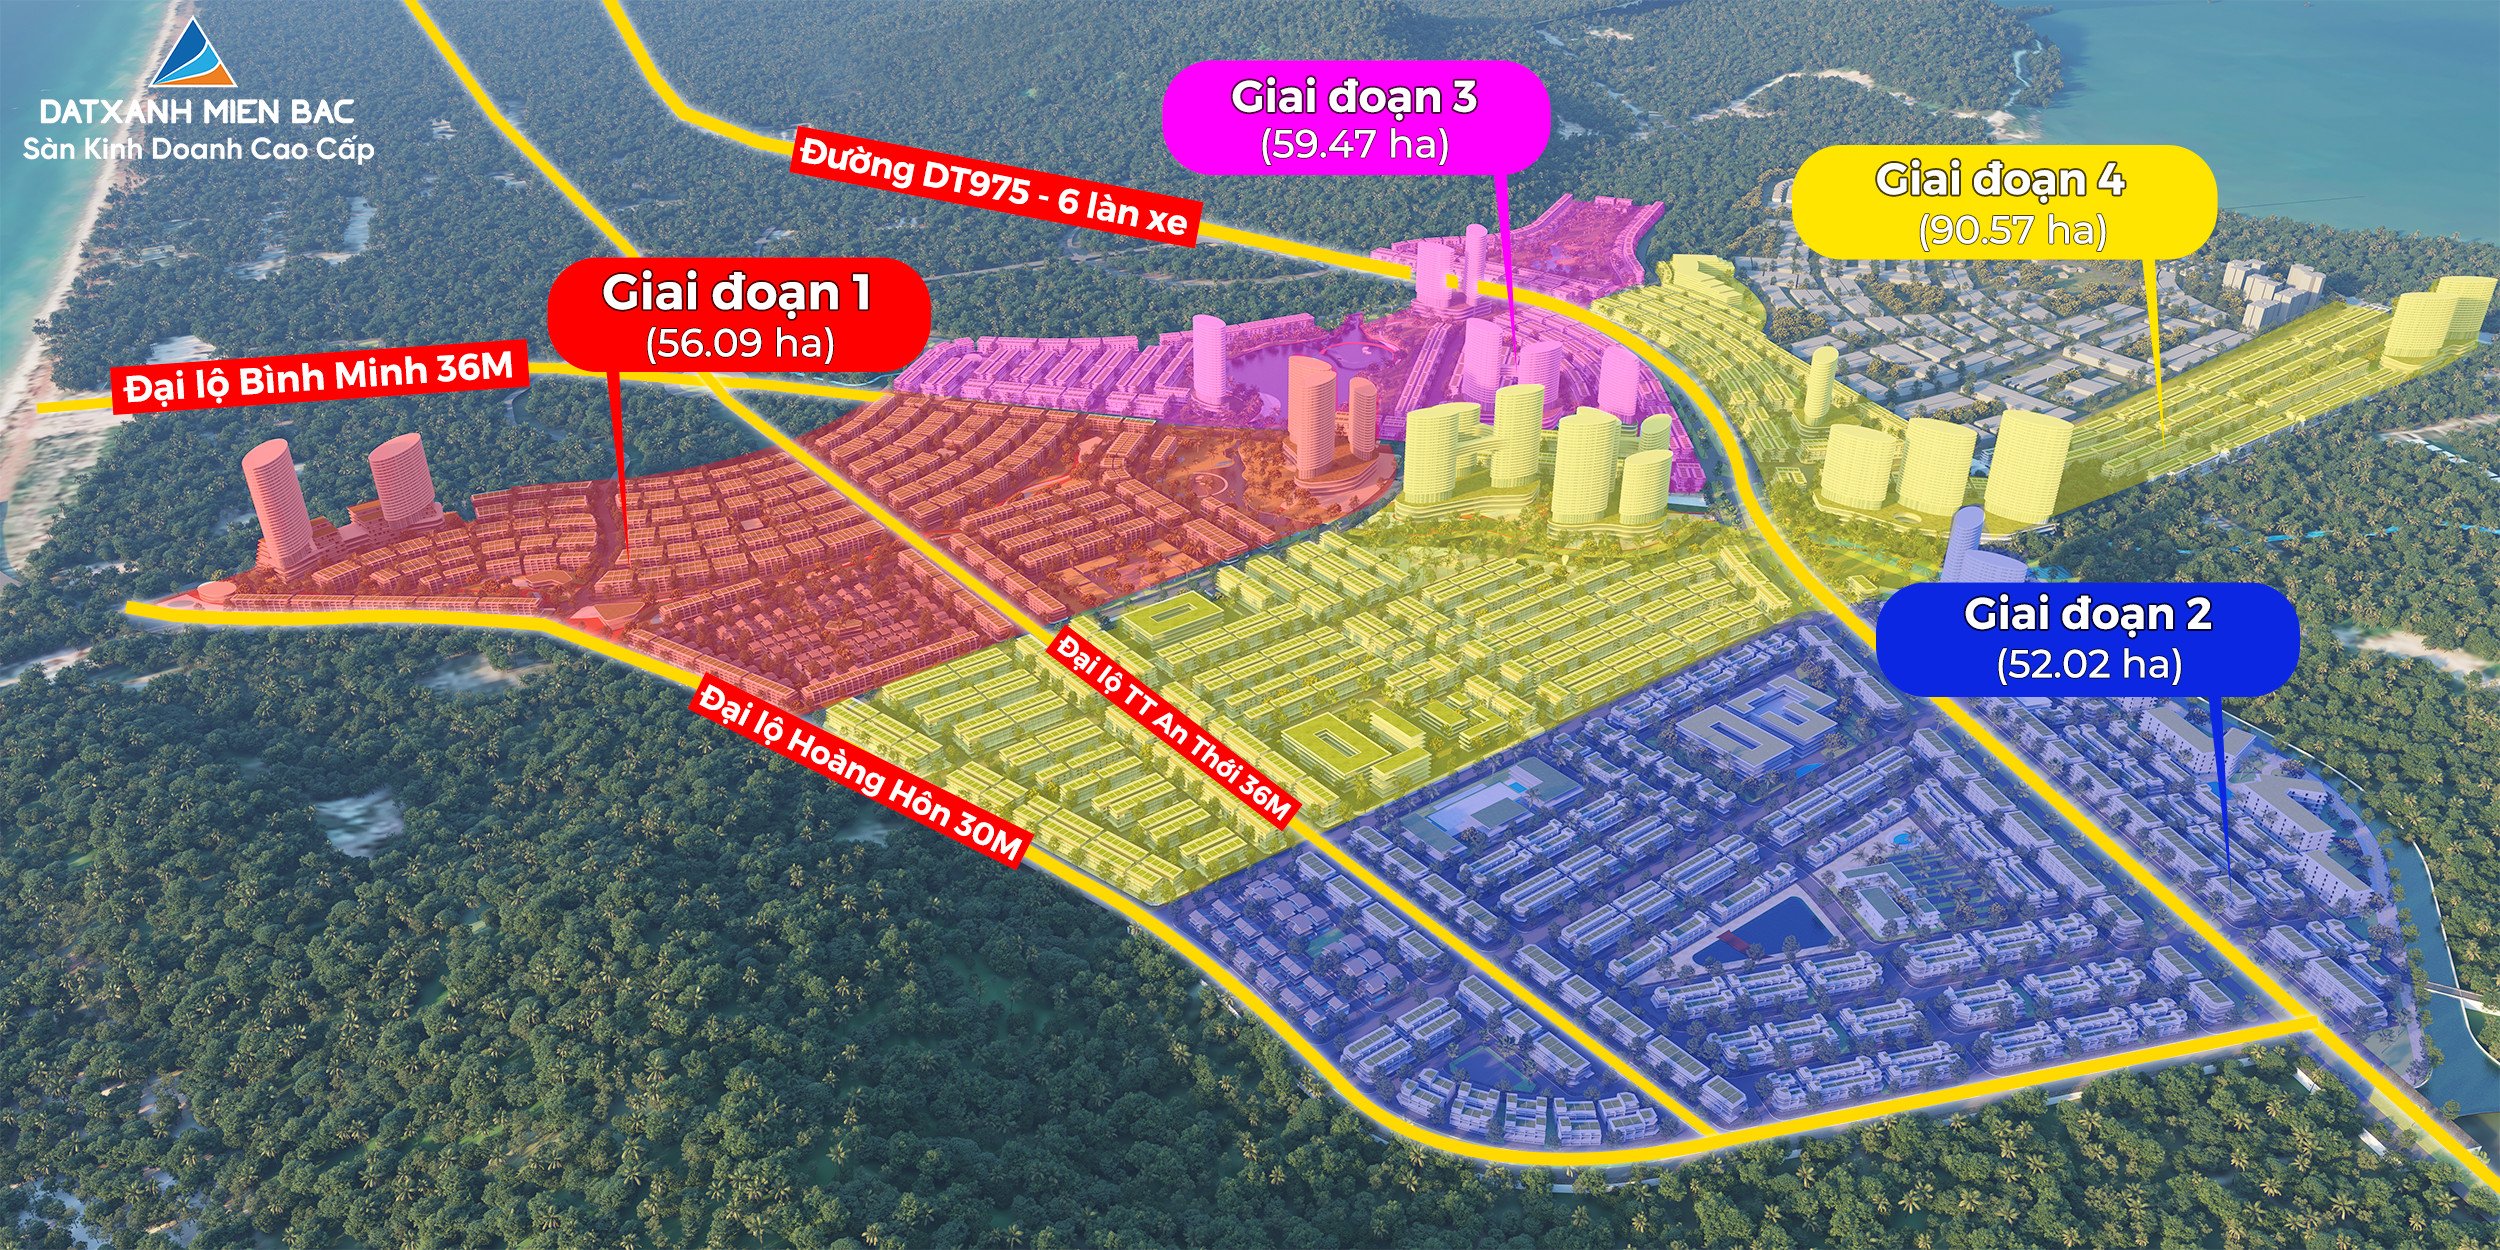 4 Giai đoạn cũng chính là 4 Dự án thành phần Meyhomes Capital Phú Quốc Crystal city